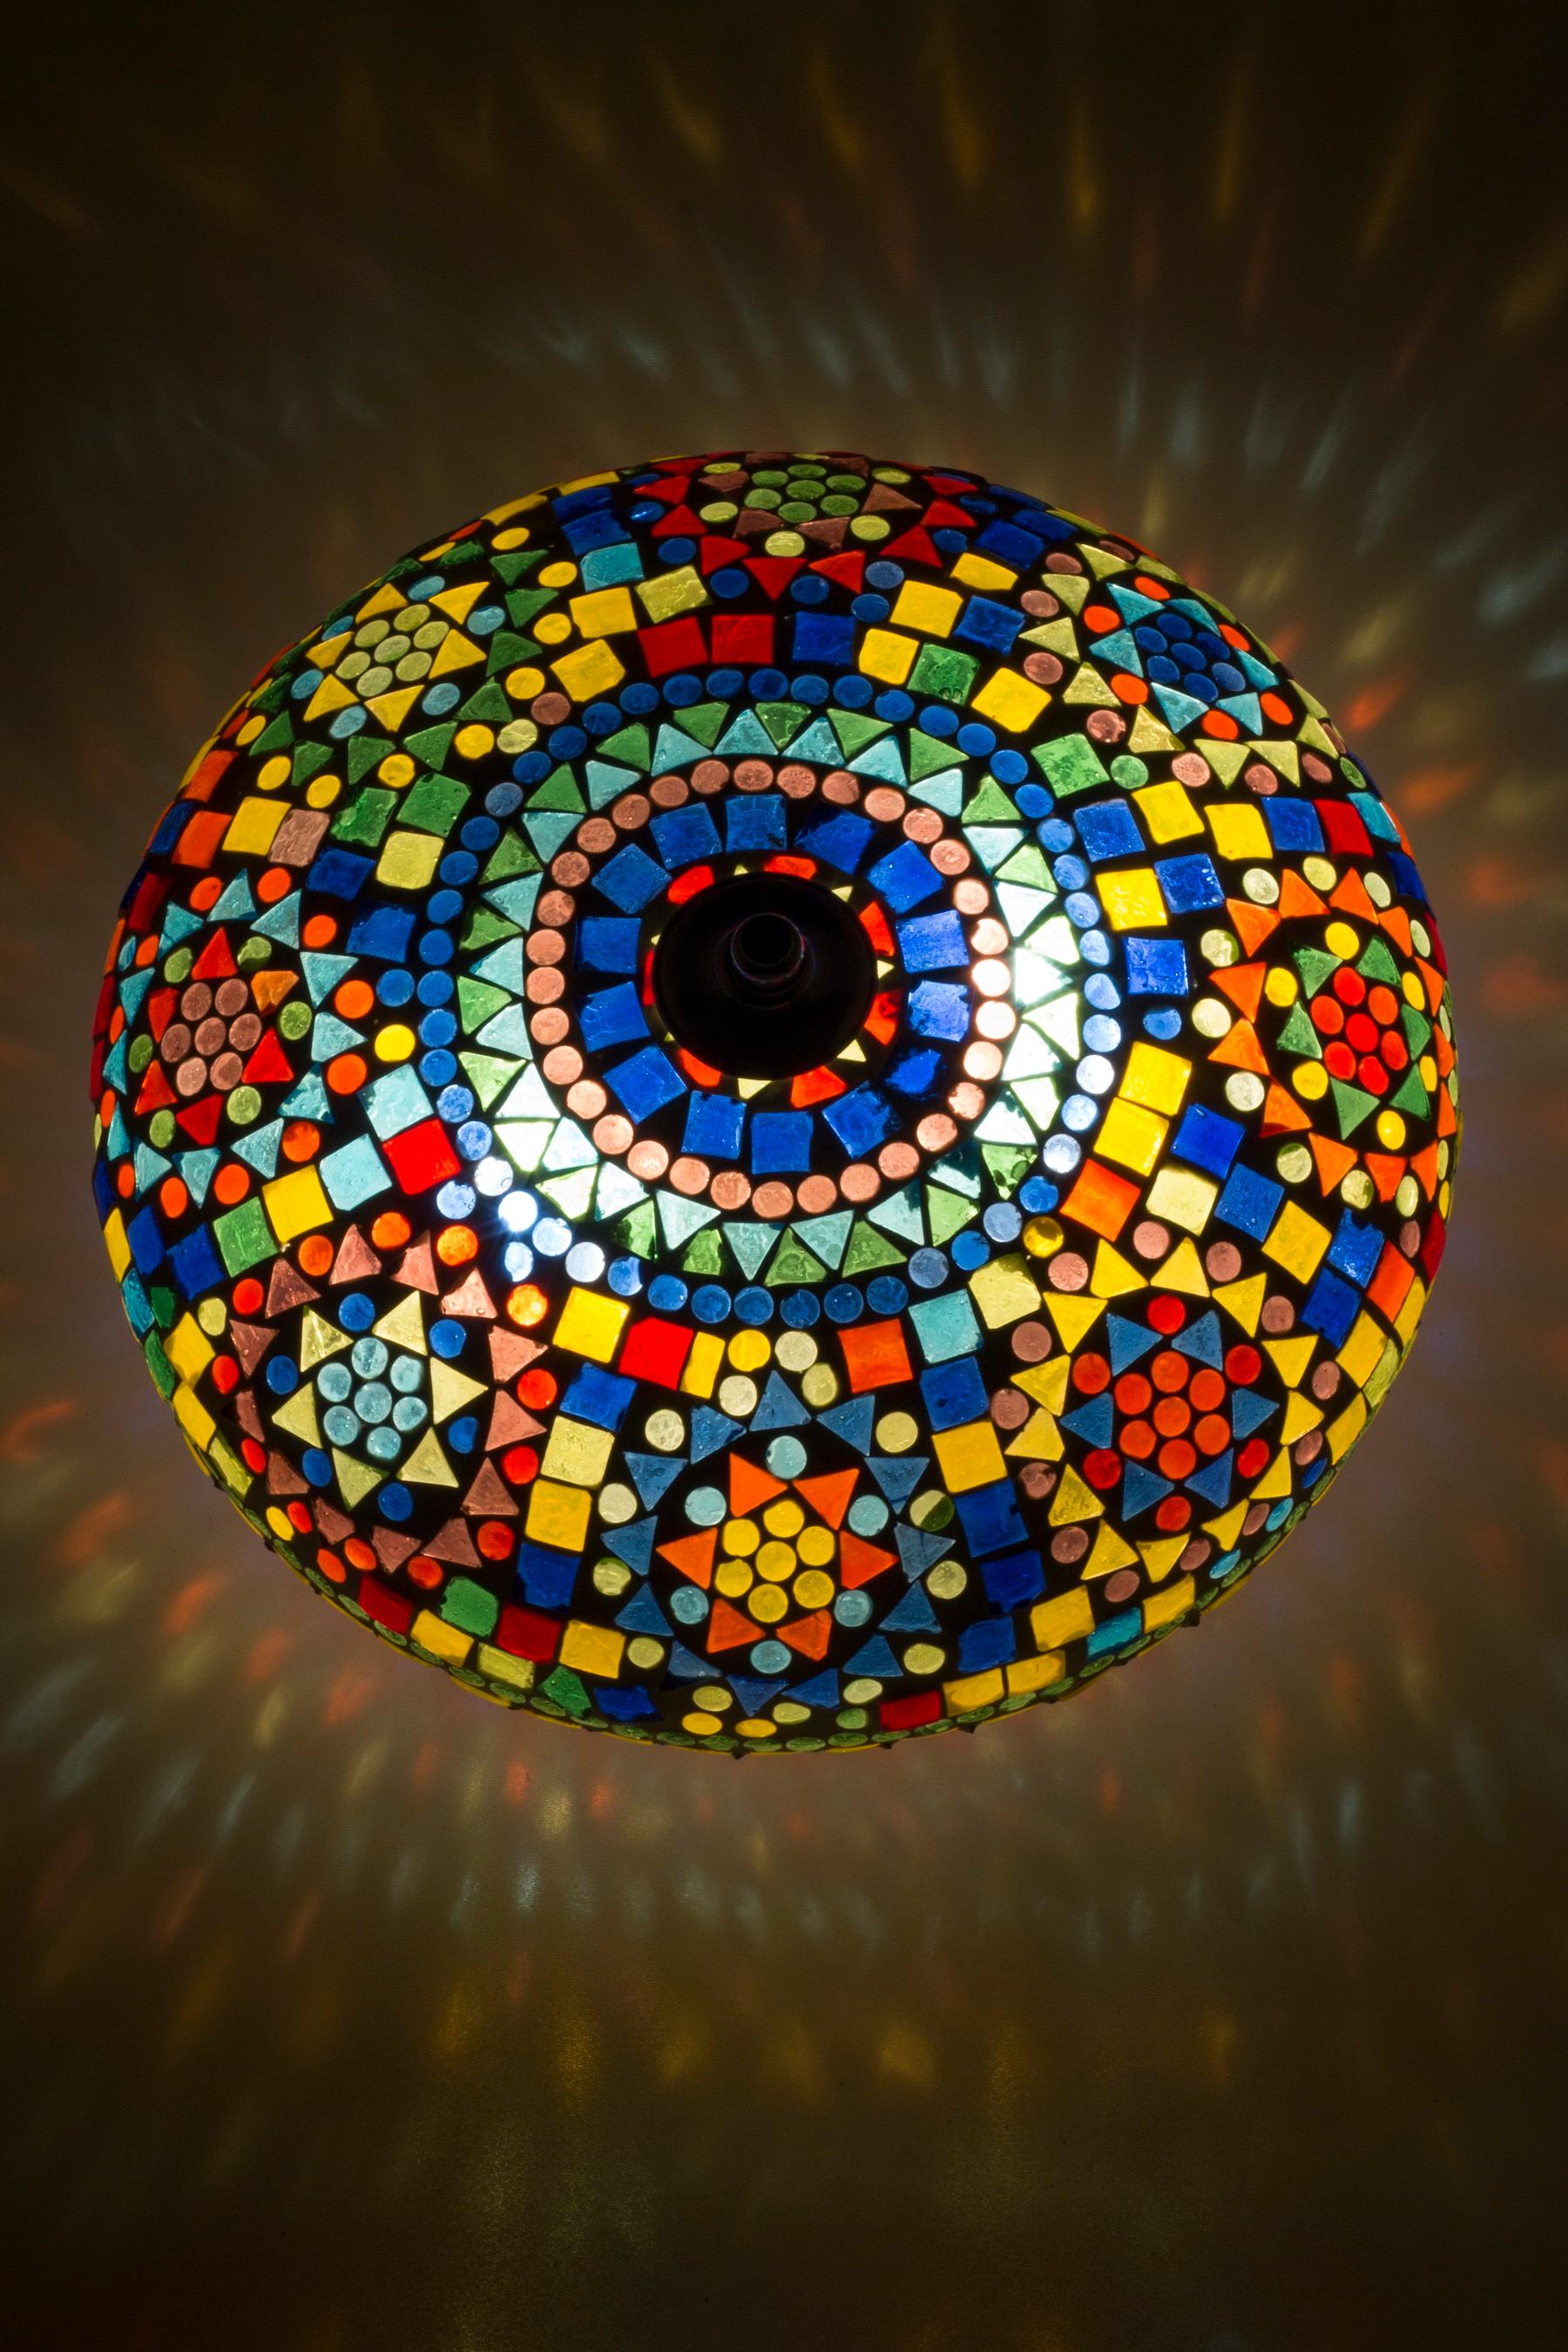 Lampe, Deckenlampe, Mosaik Deckenlampe #orientalisch #livingathome #wohnzimmerbeleuchtung ©Kamalla-Home